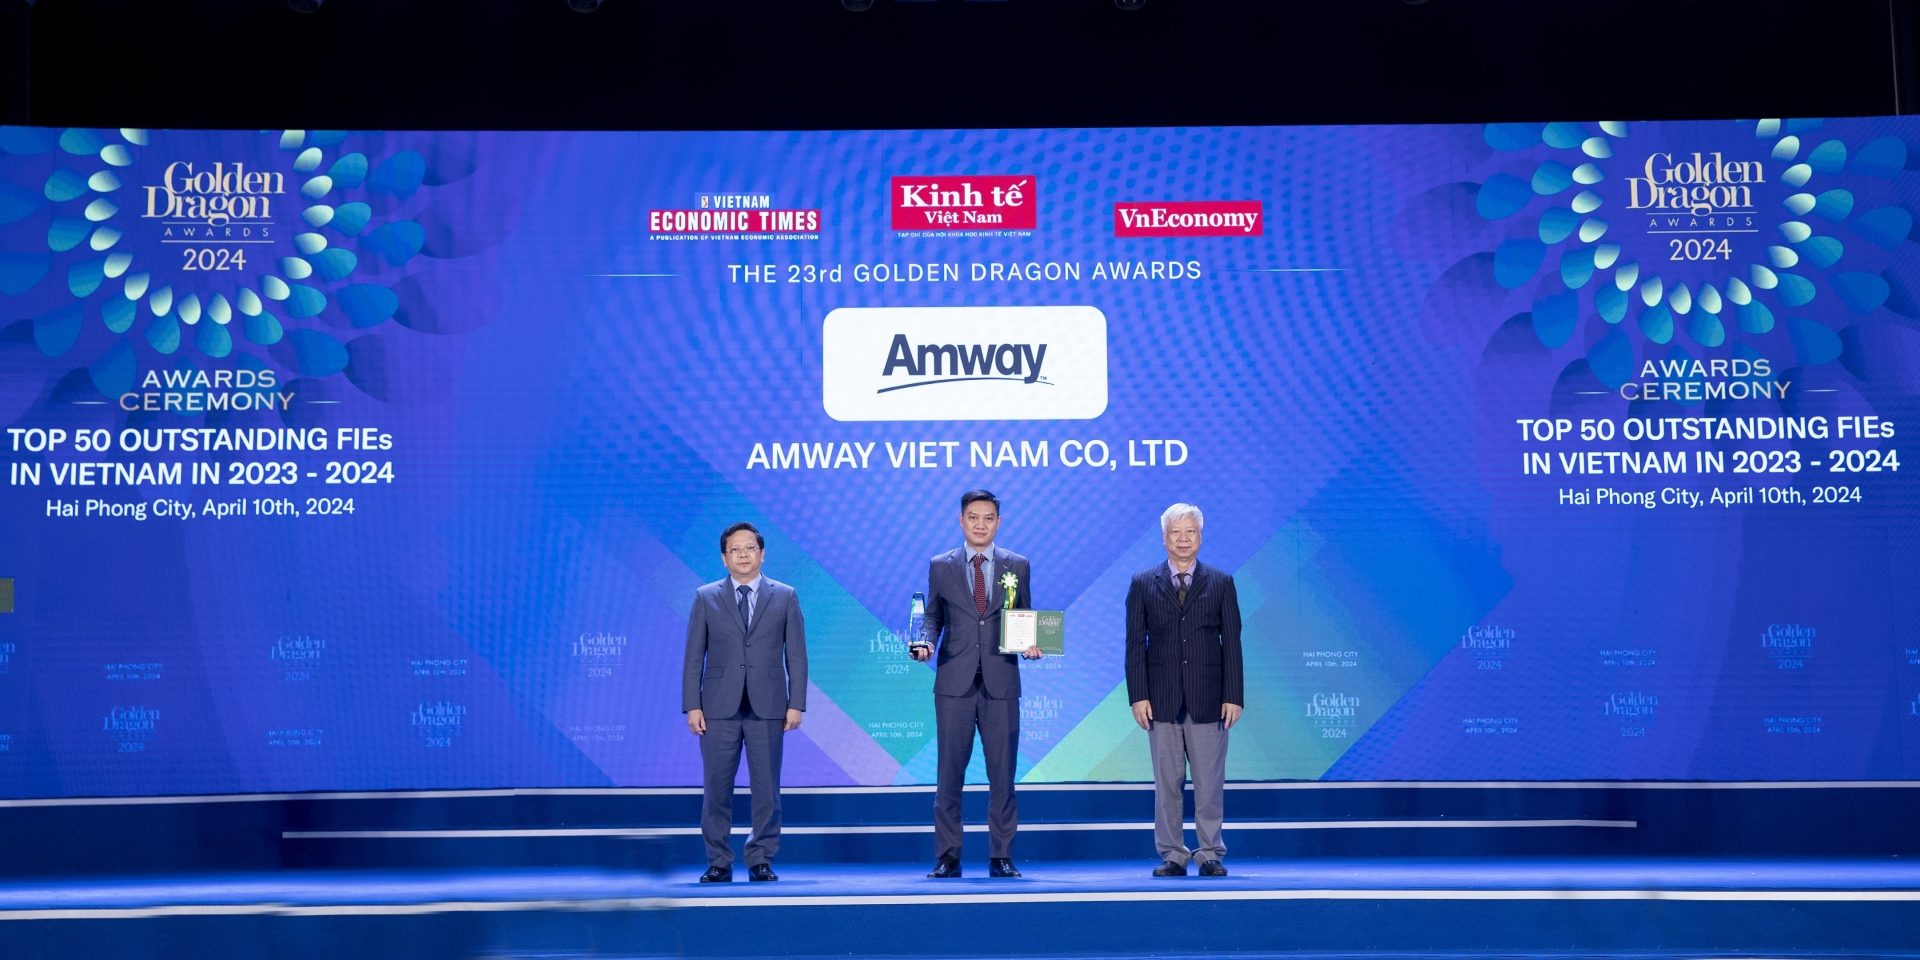 Amway Việt Nam là doanh nghiệp FDI phát triển nền kinh tế xanh bền vững